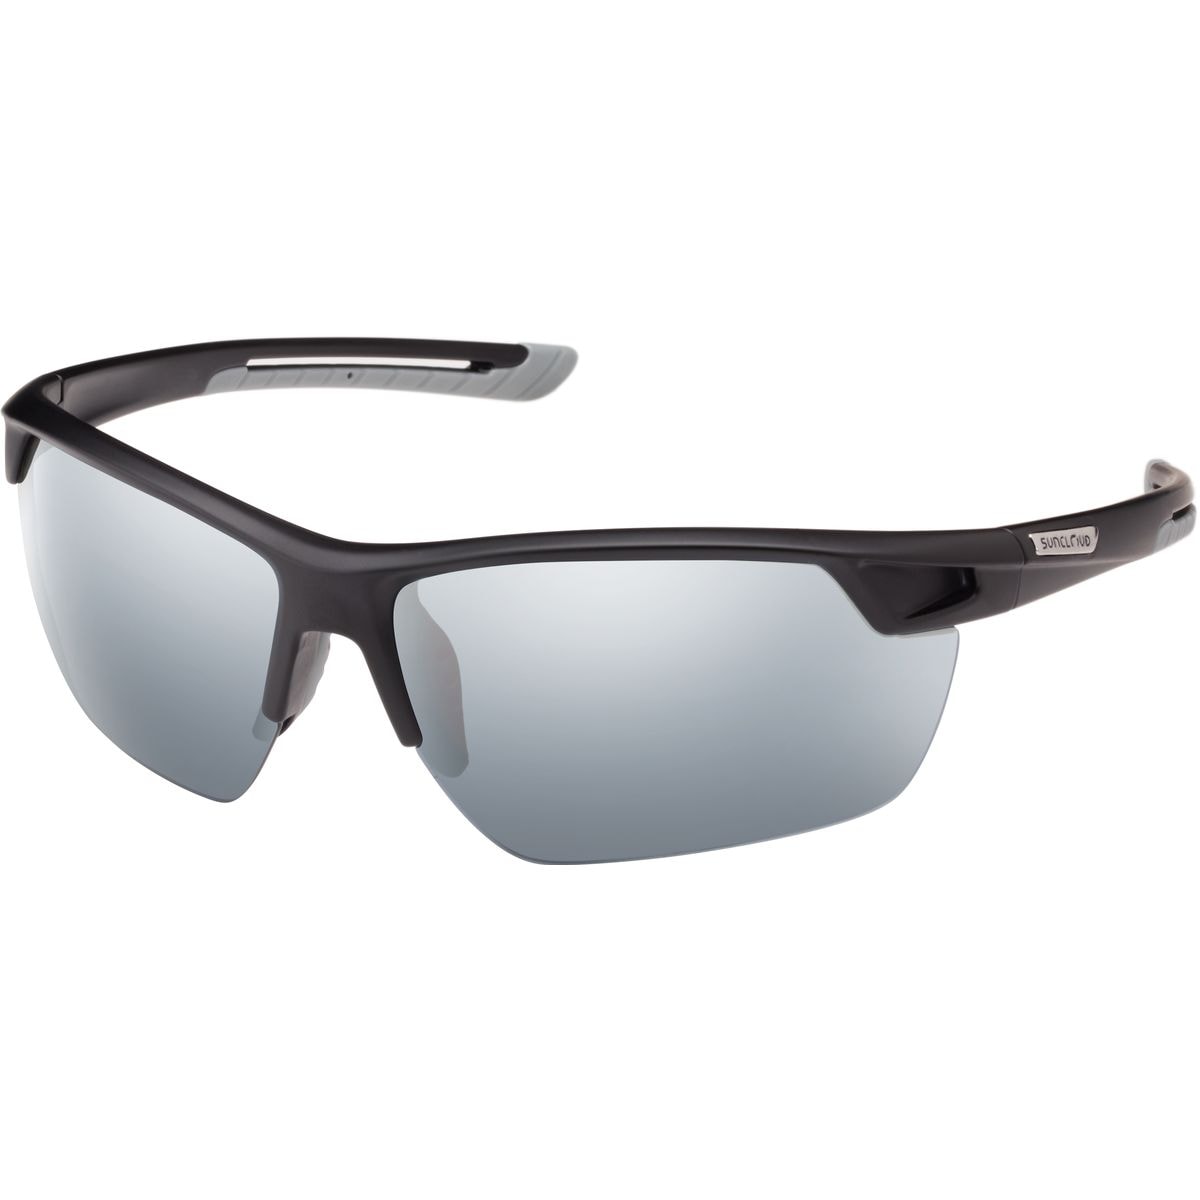 Поляризованные солнцезащитные очки contender Suncloud Polarized Optics, цвет matte black/silver mirror очки солнцезащитные stylemark polarized l1475a